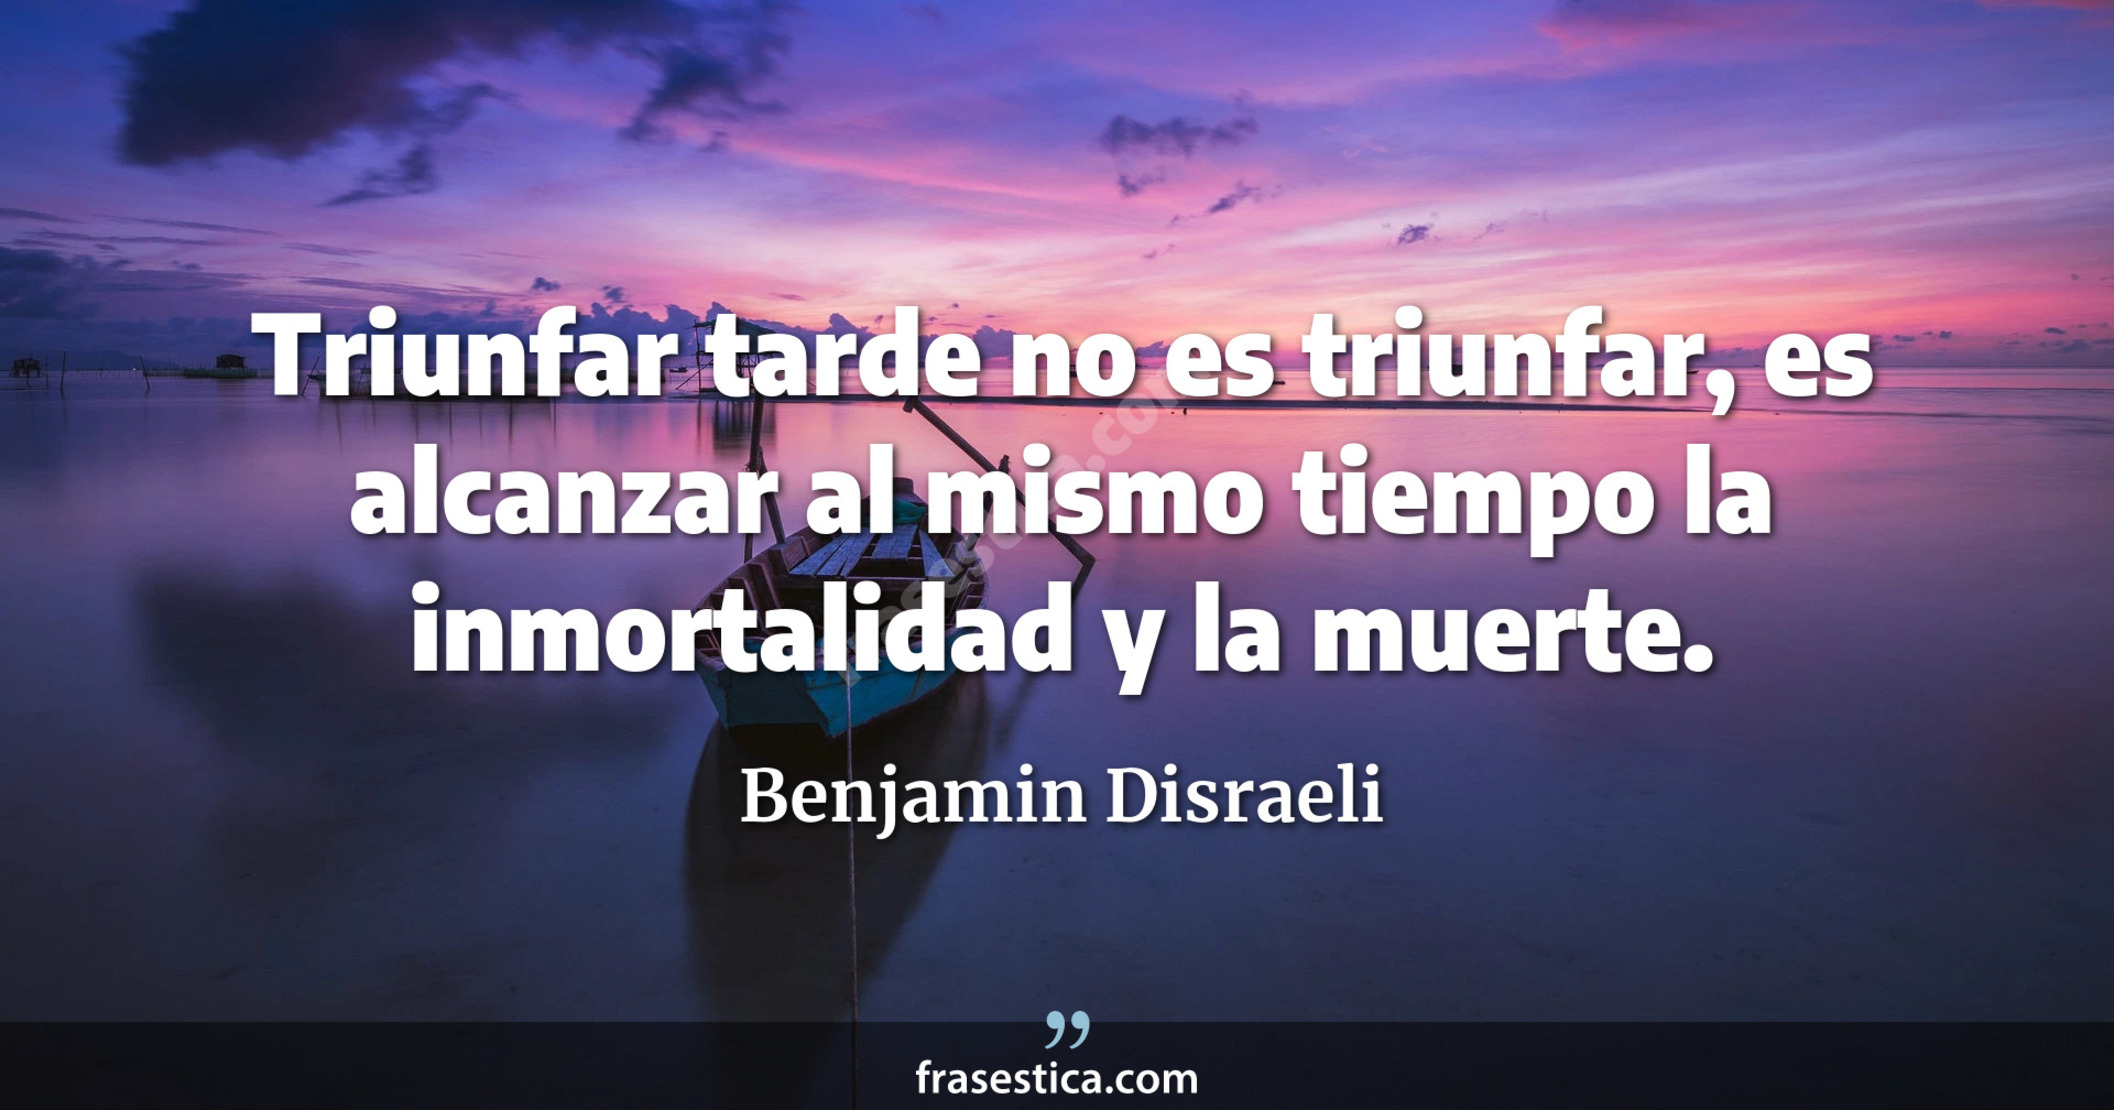 Triunfar tarde no es triunfar, es alcanzar al mismo tiempo la inmortalidad y la muerte. - Benjamin Disraeli